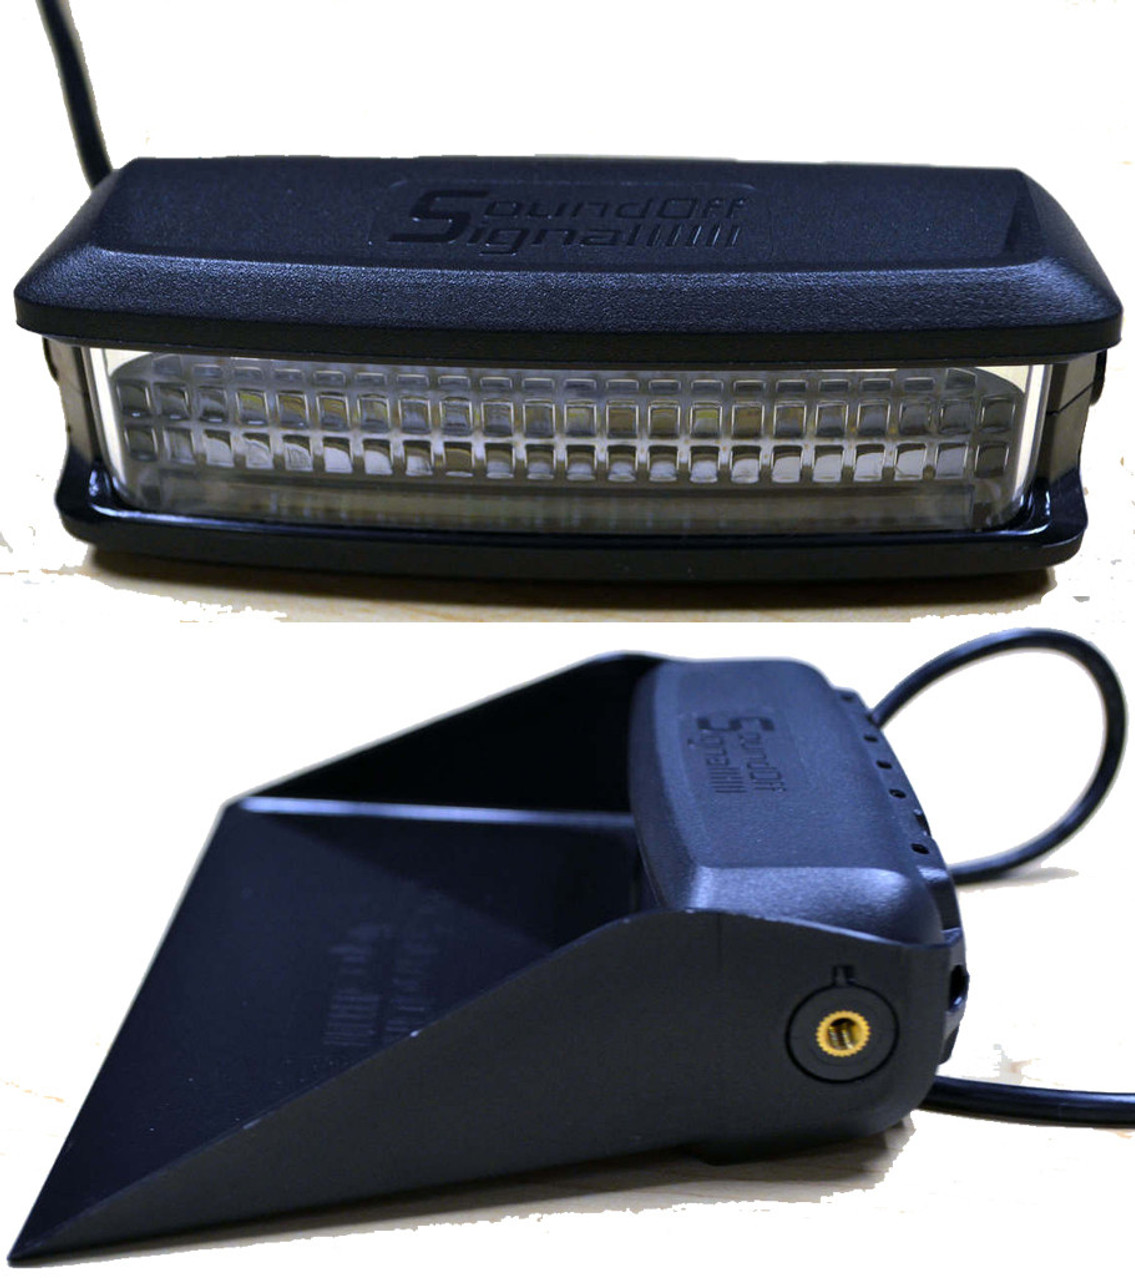 Soundoff nFORCE Dash Deck Windshield 12 LED Light, includes mounting bracket, Detachable Shroud, Dual Color per light head Blue/White, Hard-wire, ENFS800ZT-E